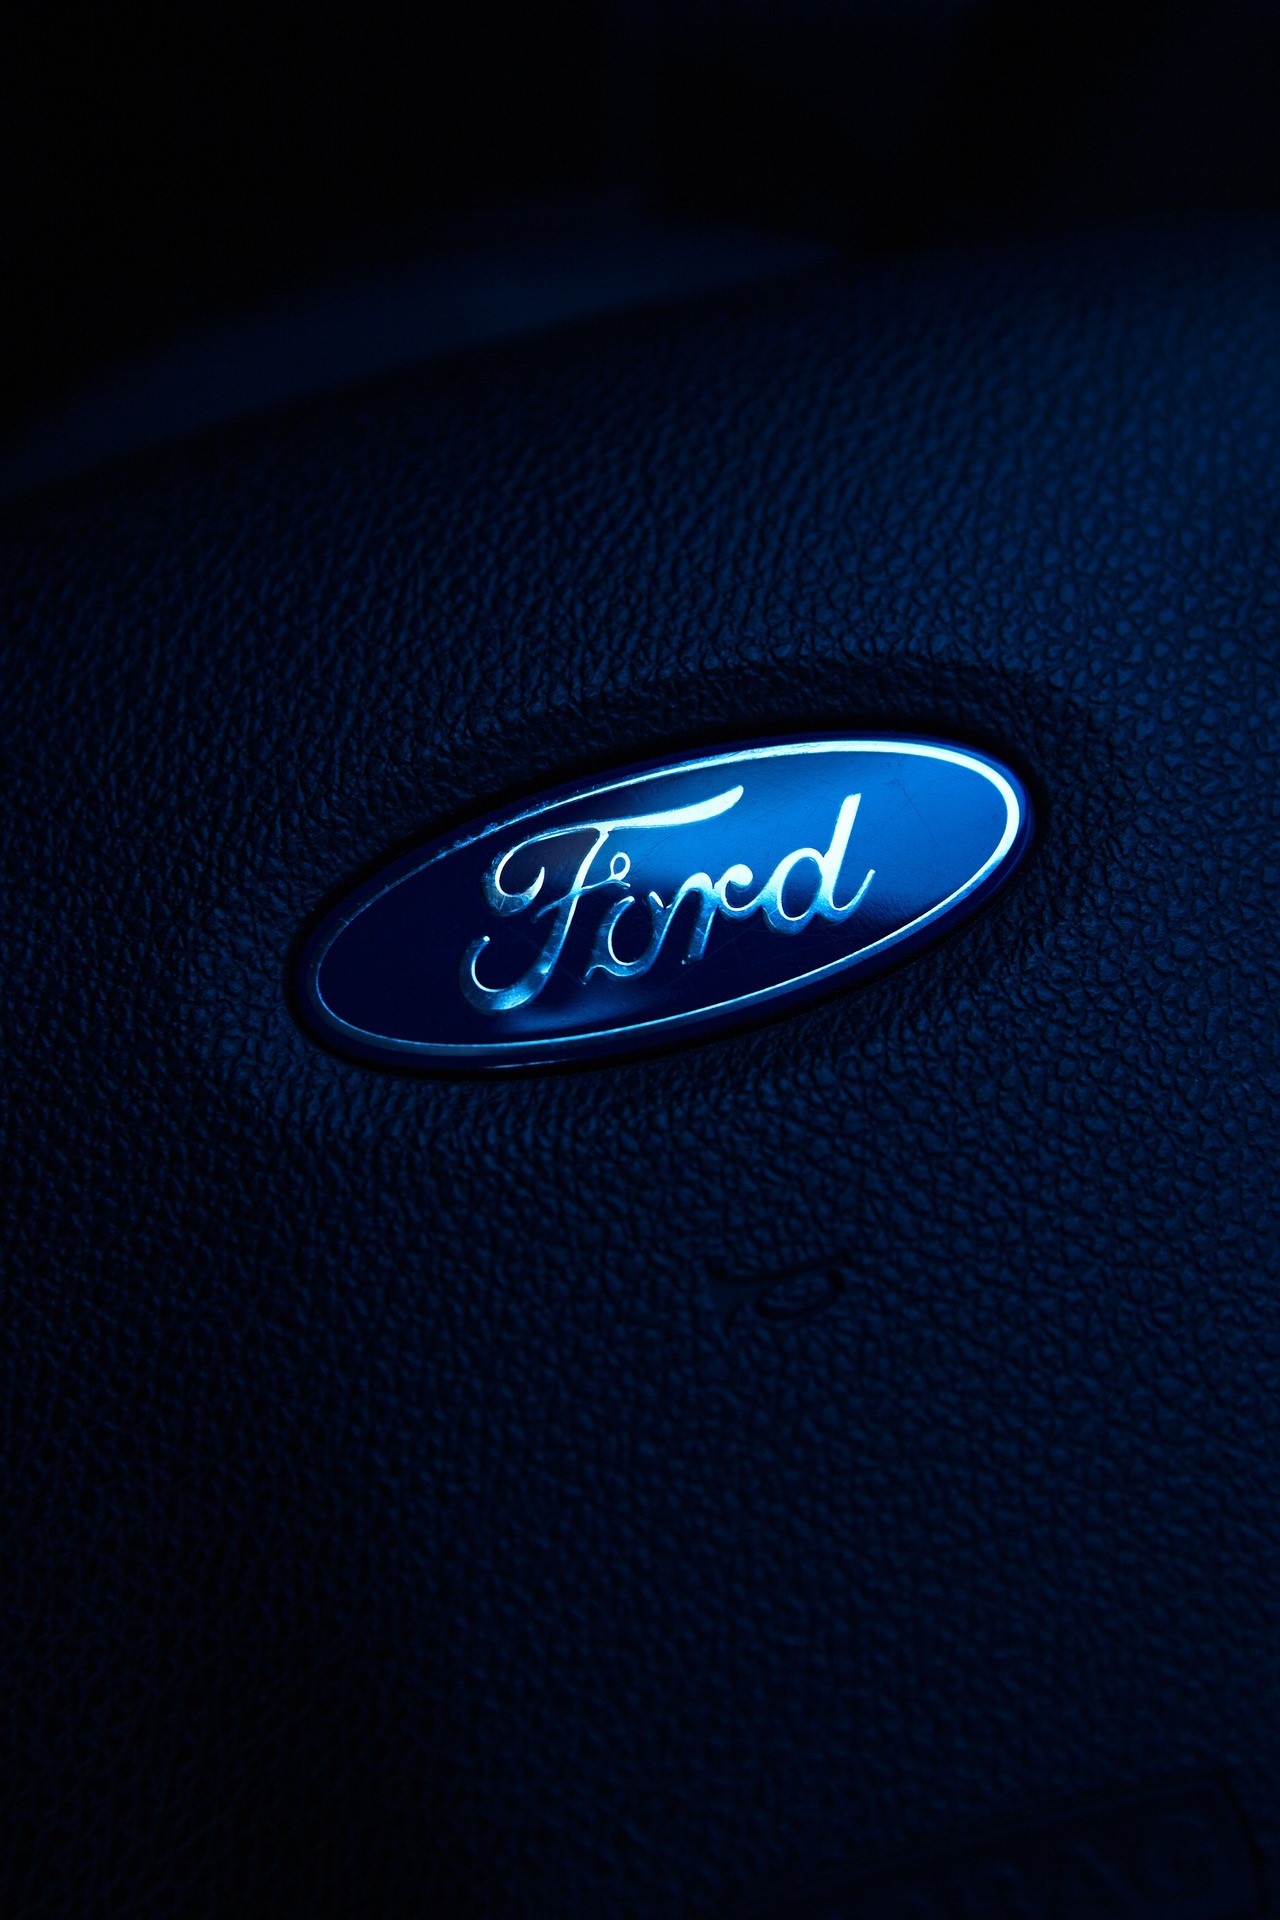 Jak powstawała jedna z najsłynniejszych marek motoryzacyjnych – Ford?